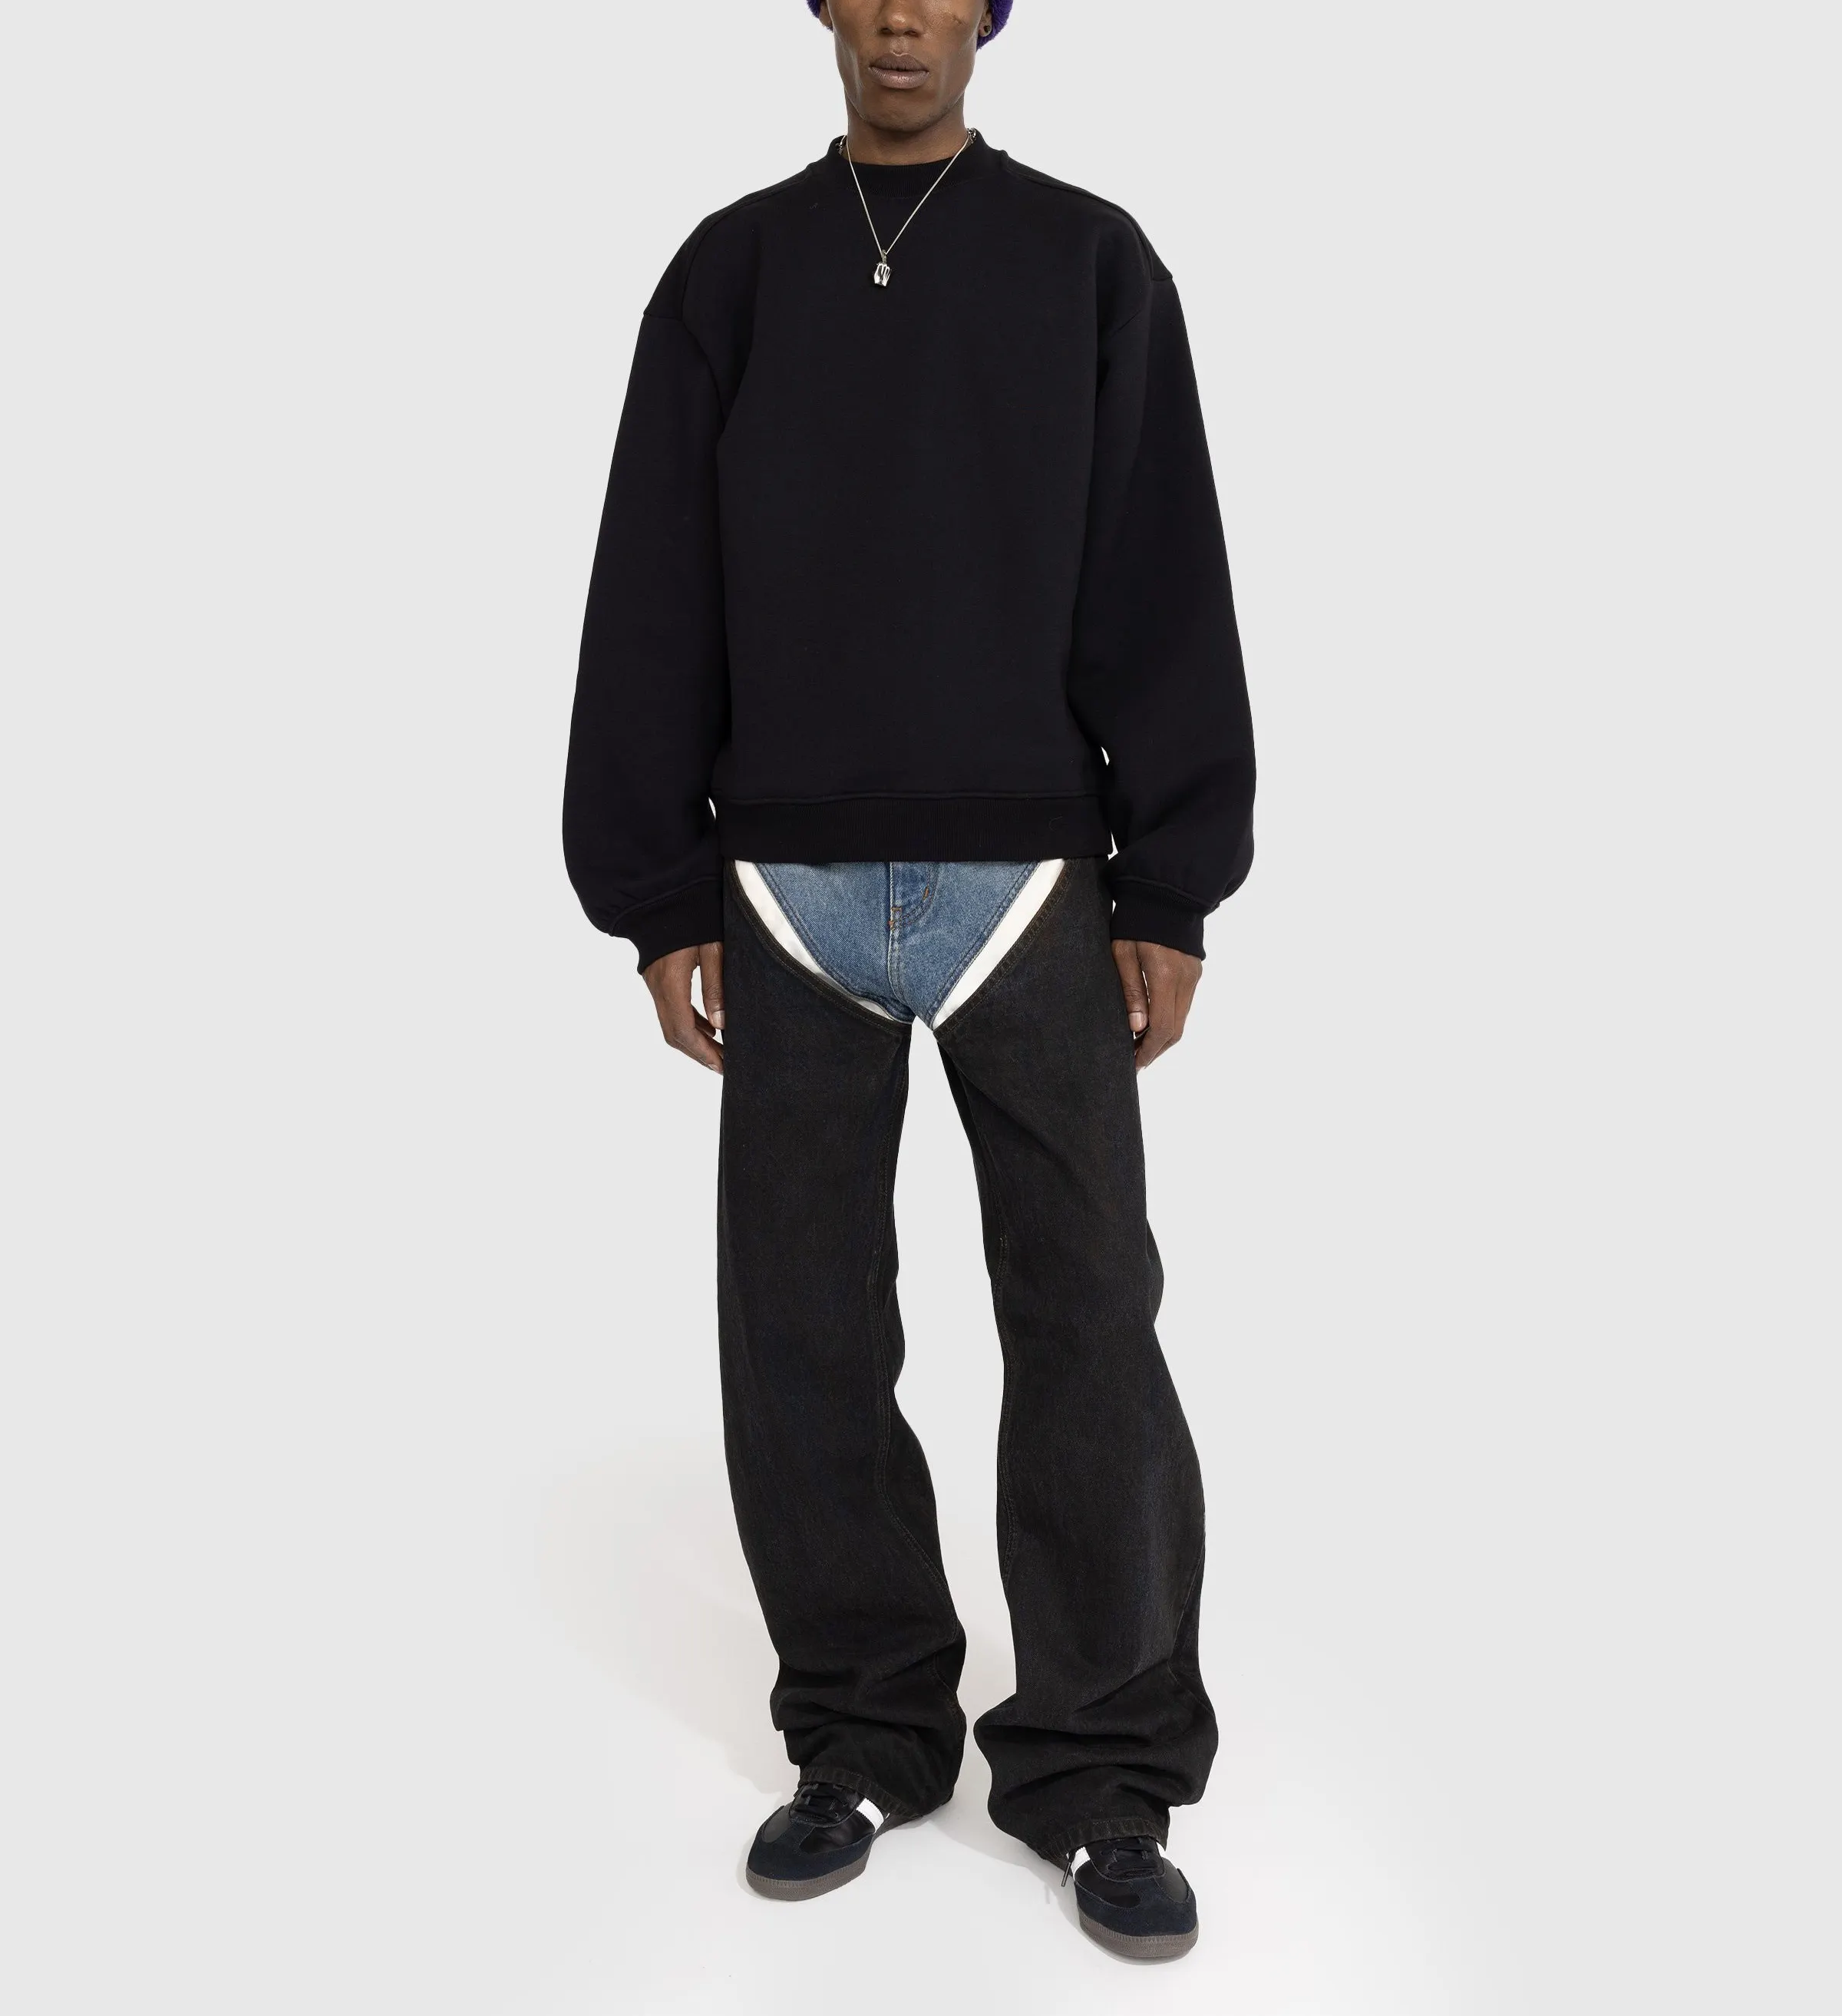 ज़ुओयांग परिधान उच्च गुणवत्ता वाले कॉरडरॉय पैंट मैन बैगी हाई कमर कंट्रास्ट पैचवर्क ट्राउजर कैजुअल स्ट्रेट स्वेटपैंट कैप्रीस